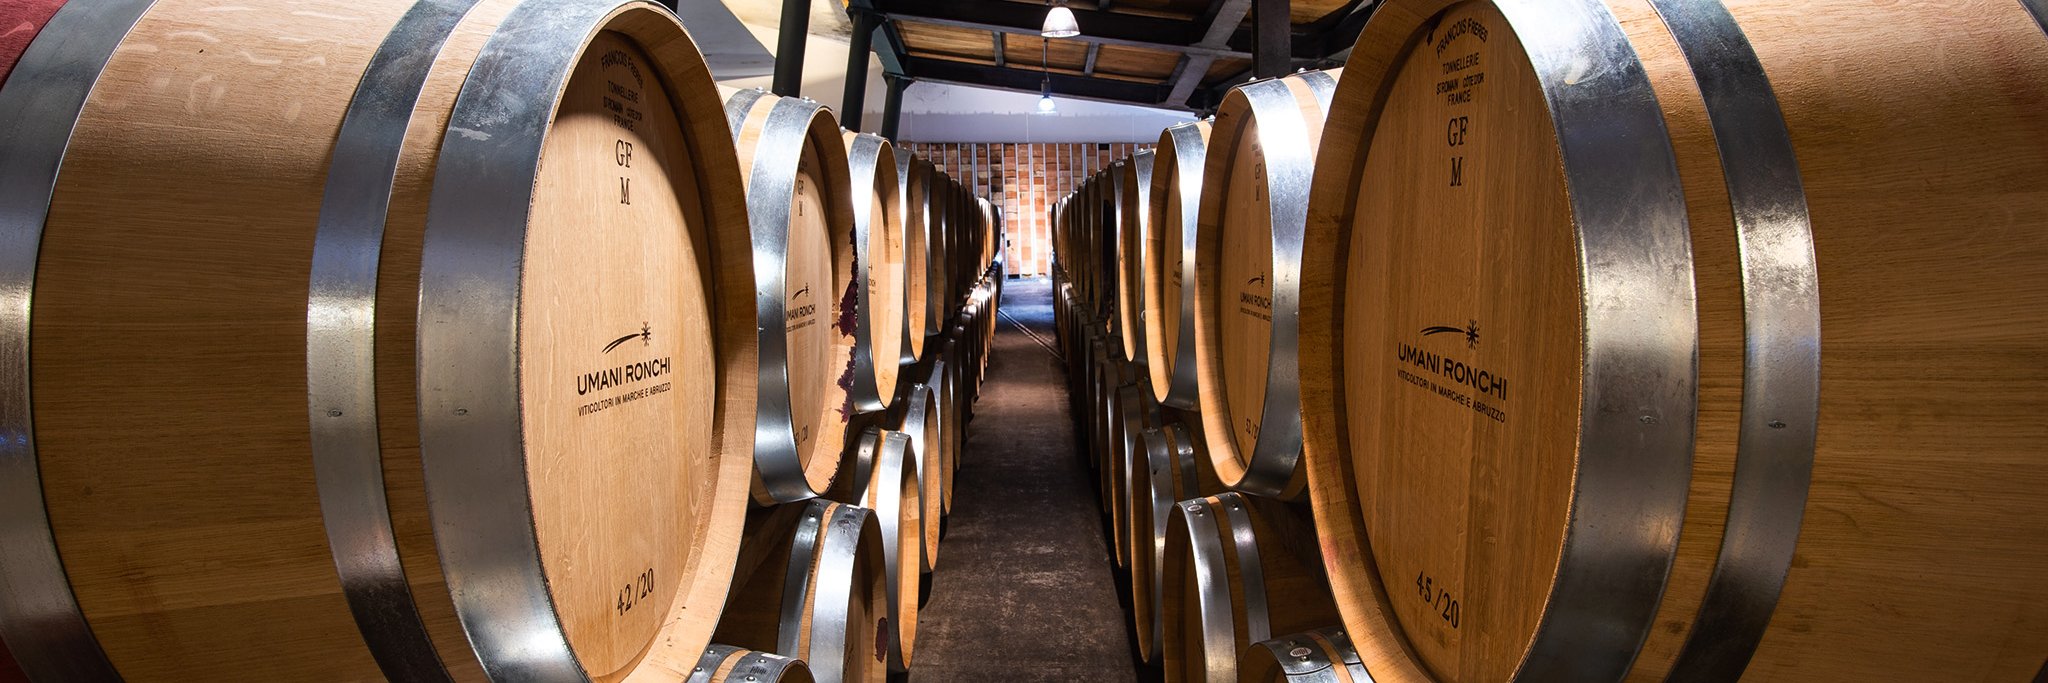 Bei Umani Ronchi im Hinterland der Hafenstadt Ancona reifen nicht nur die Rotweine, sondern auch einige Weißweine im Holzfass.